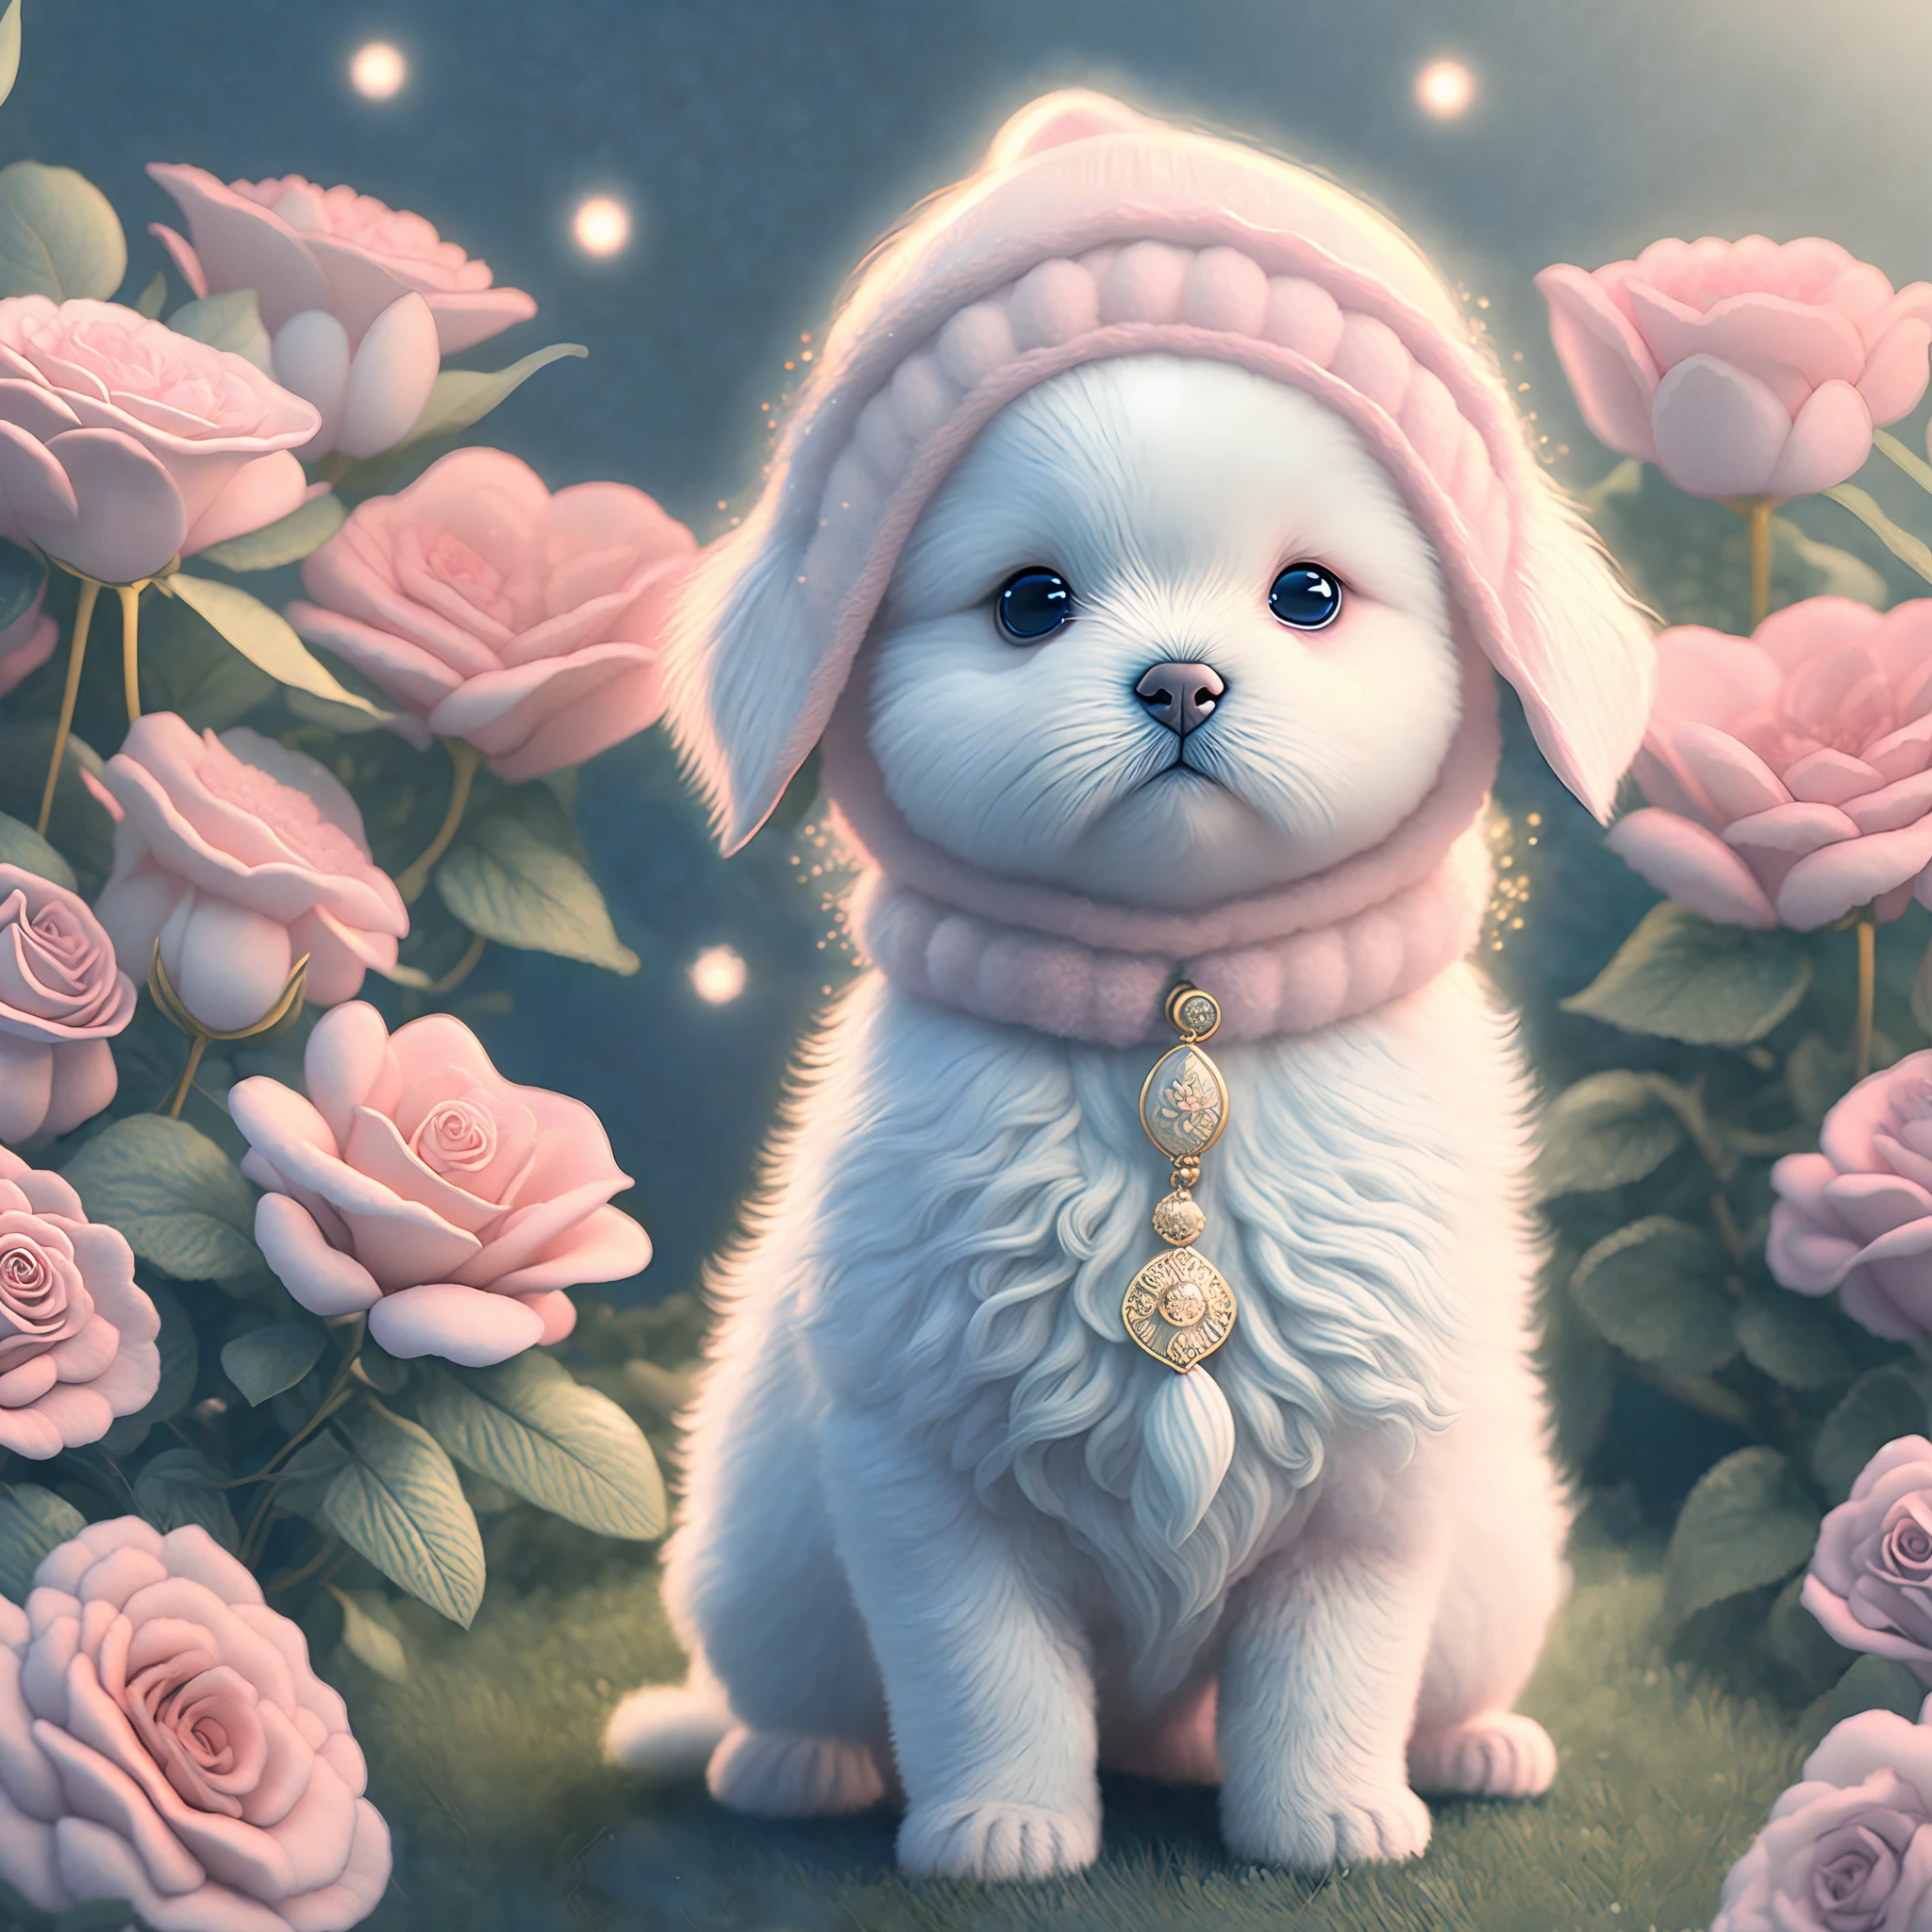 Nesta arte CG ultra-detalhada, o adorável cachorrinho cercado por rosas etéreas, melhor qualidade, alta resolução, Detalhes intrincados, fantasia, animais fofos